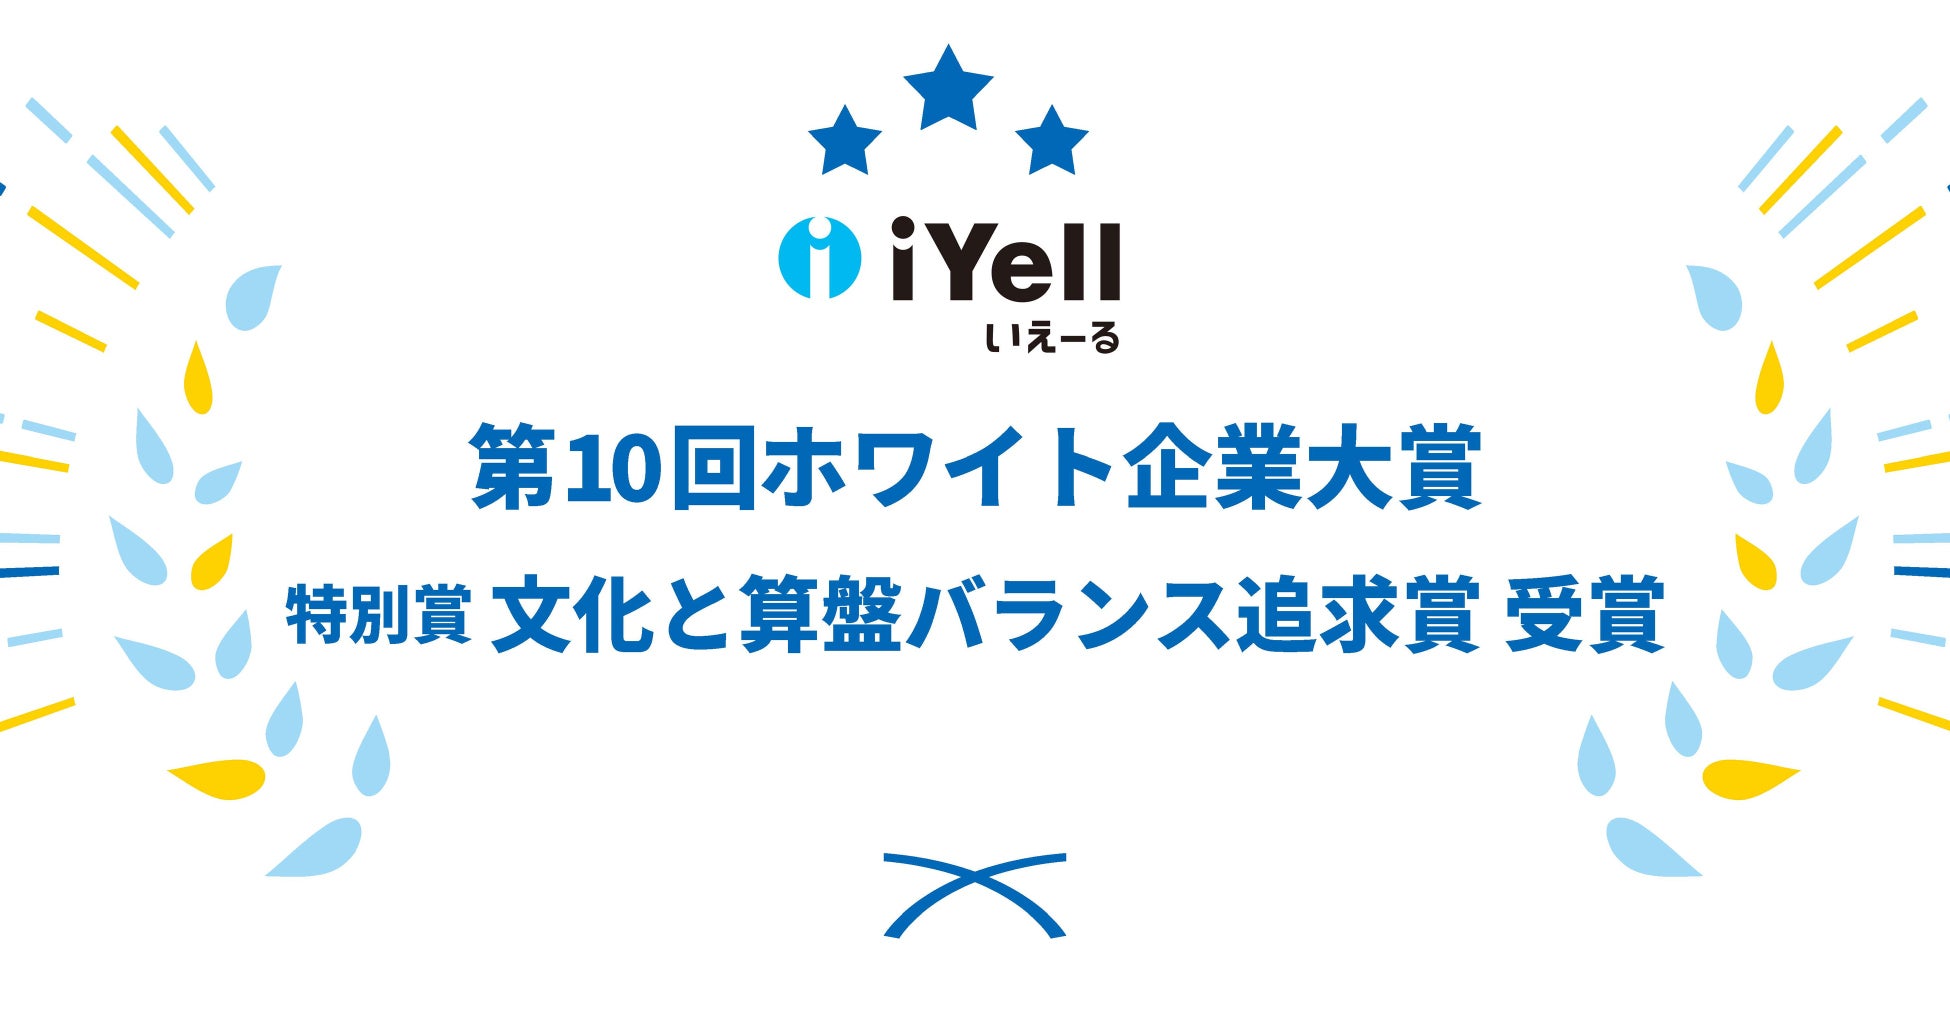 【iYell株式会社、第10回ホワイト企業大賞にて特別賞を受賞】